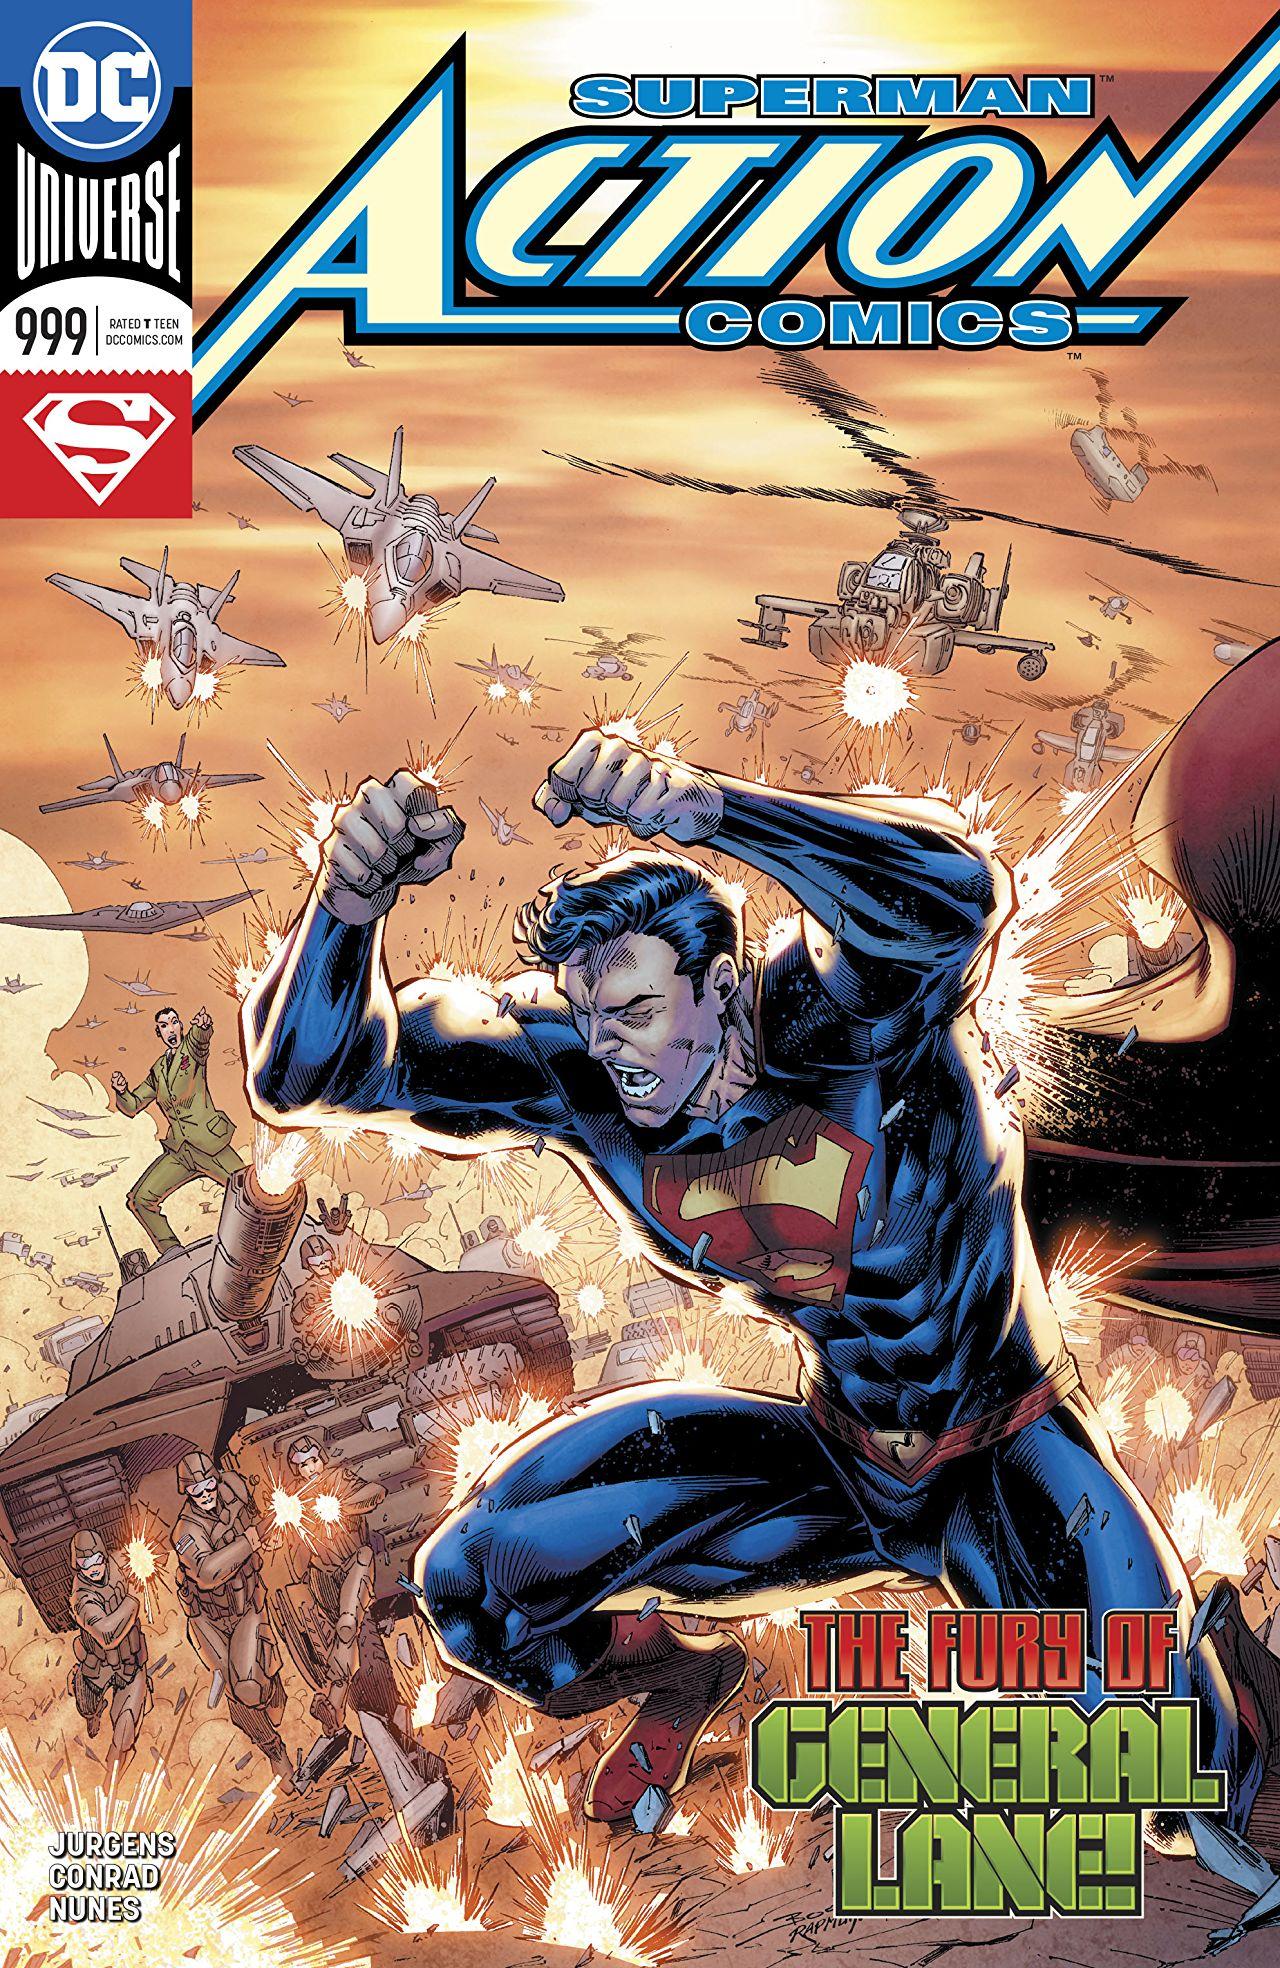 Action Comics Vol. 1 #999